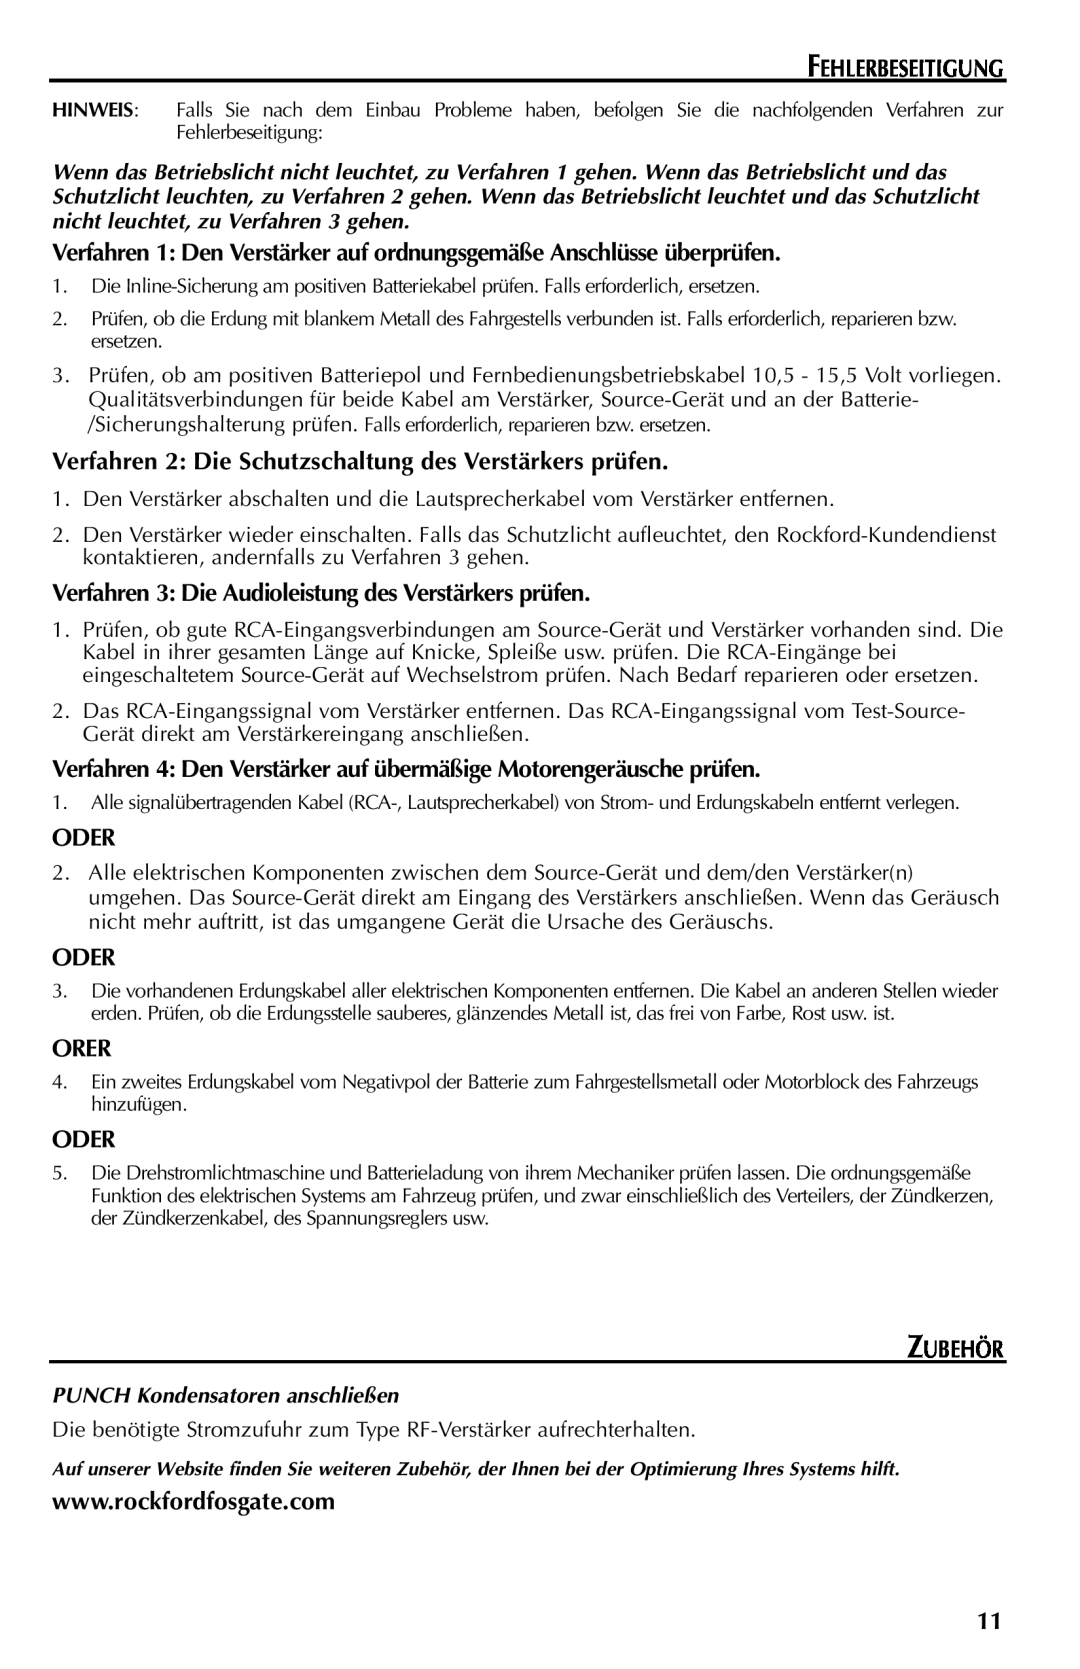 Rockford Fosgate FFX6 manual Fehlerbeseitigung, Oder, Orer, Zubehör 